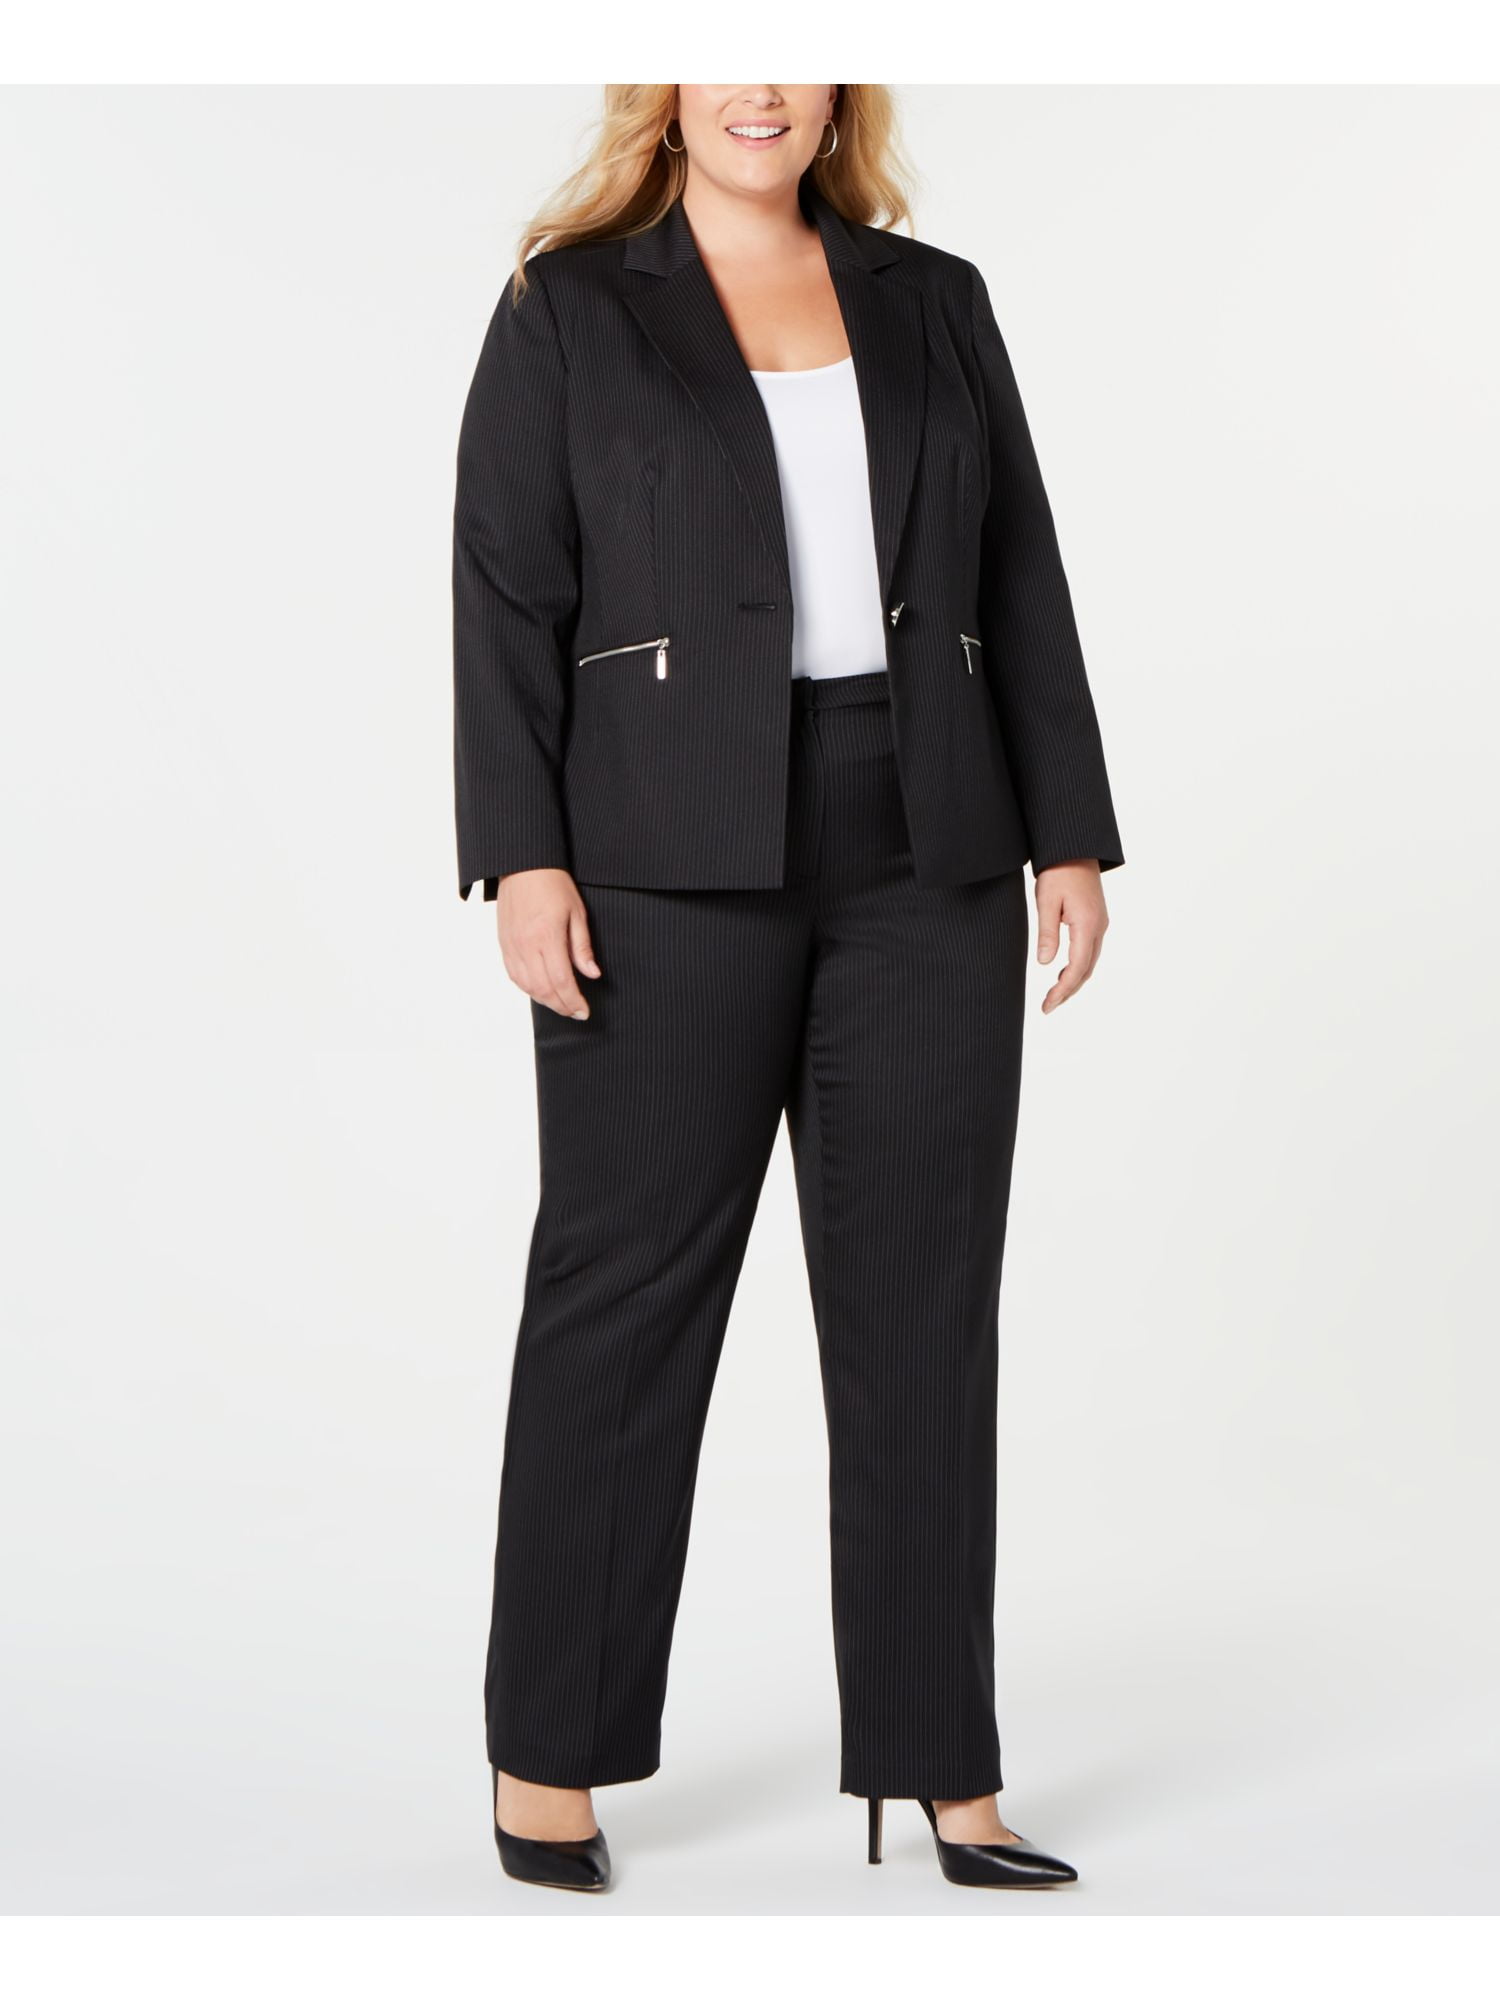 LE SUIT Womens Black Pinstripe Suit Jacket Plus Size: 20W Plus 